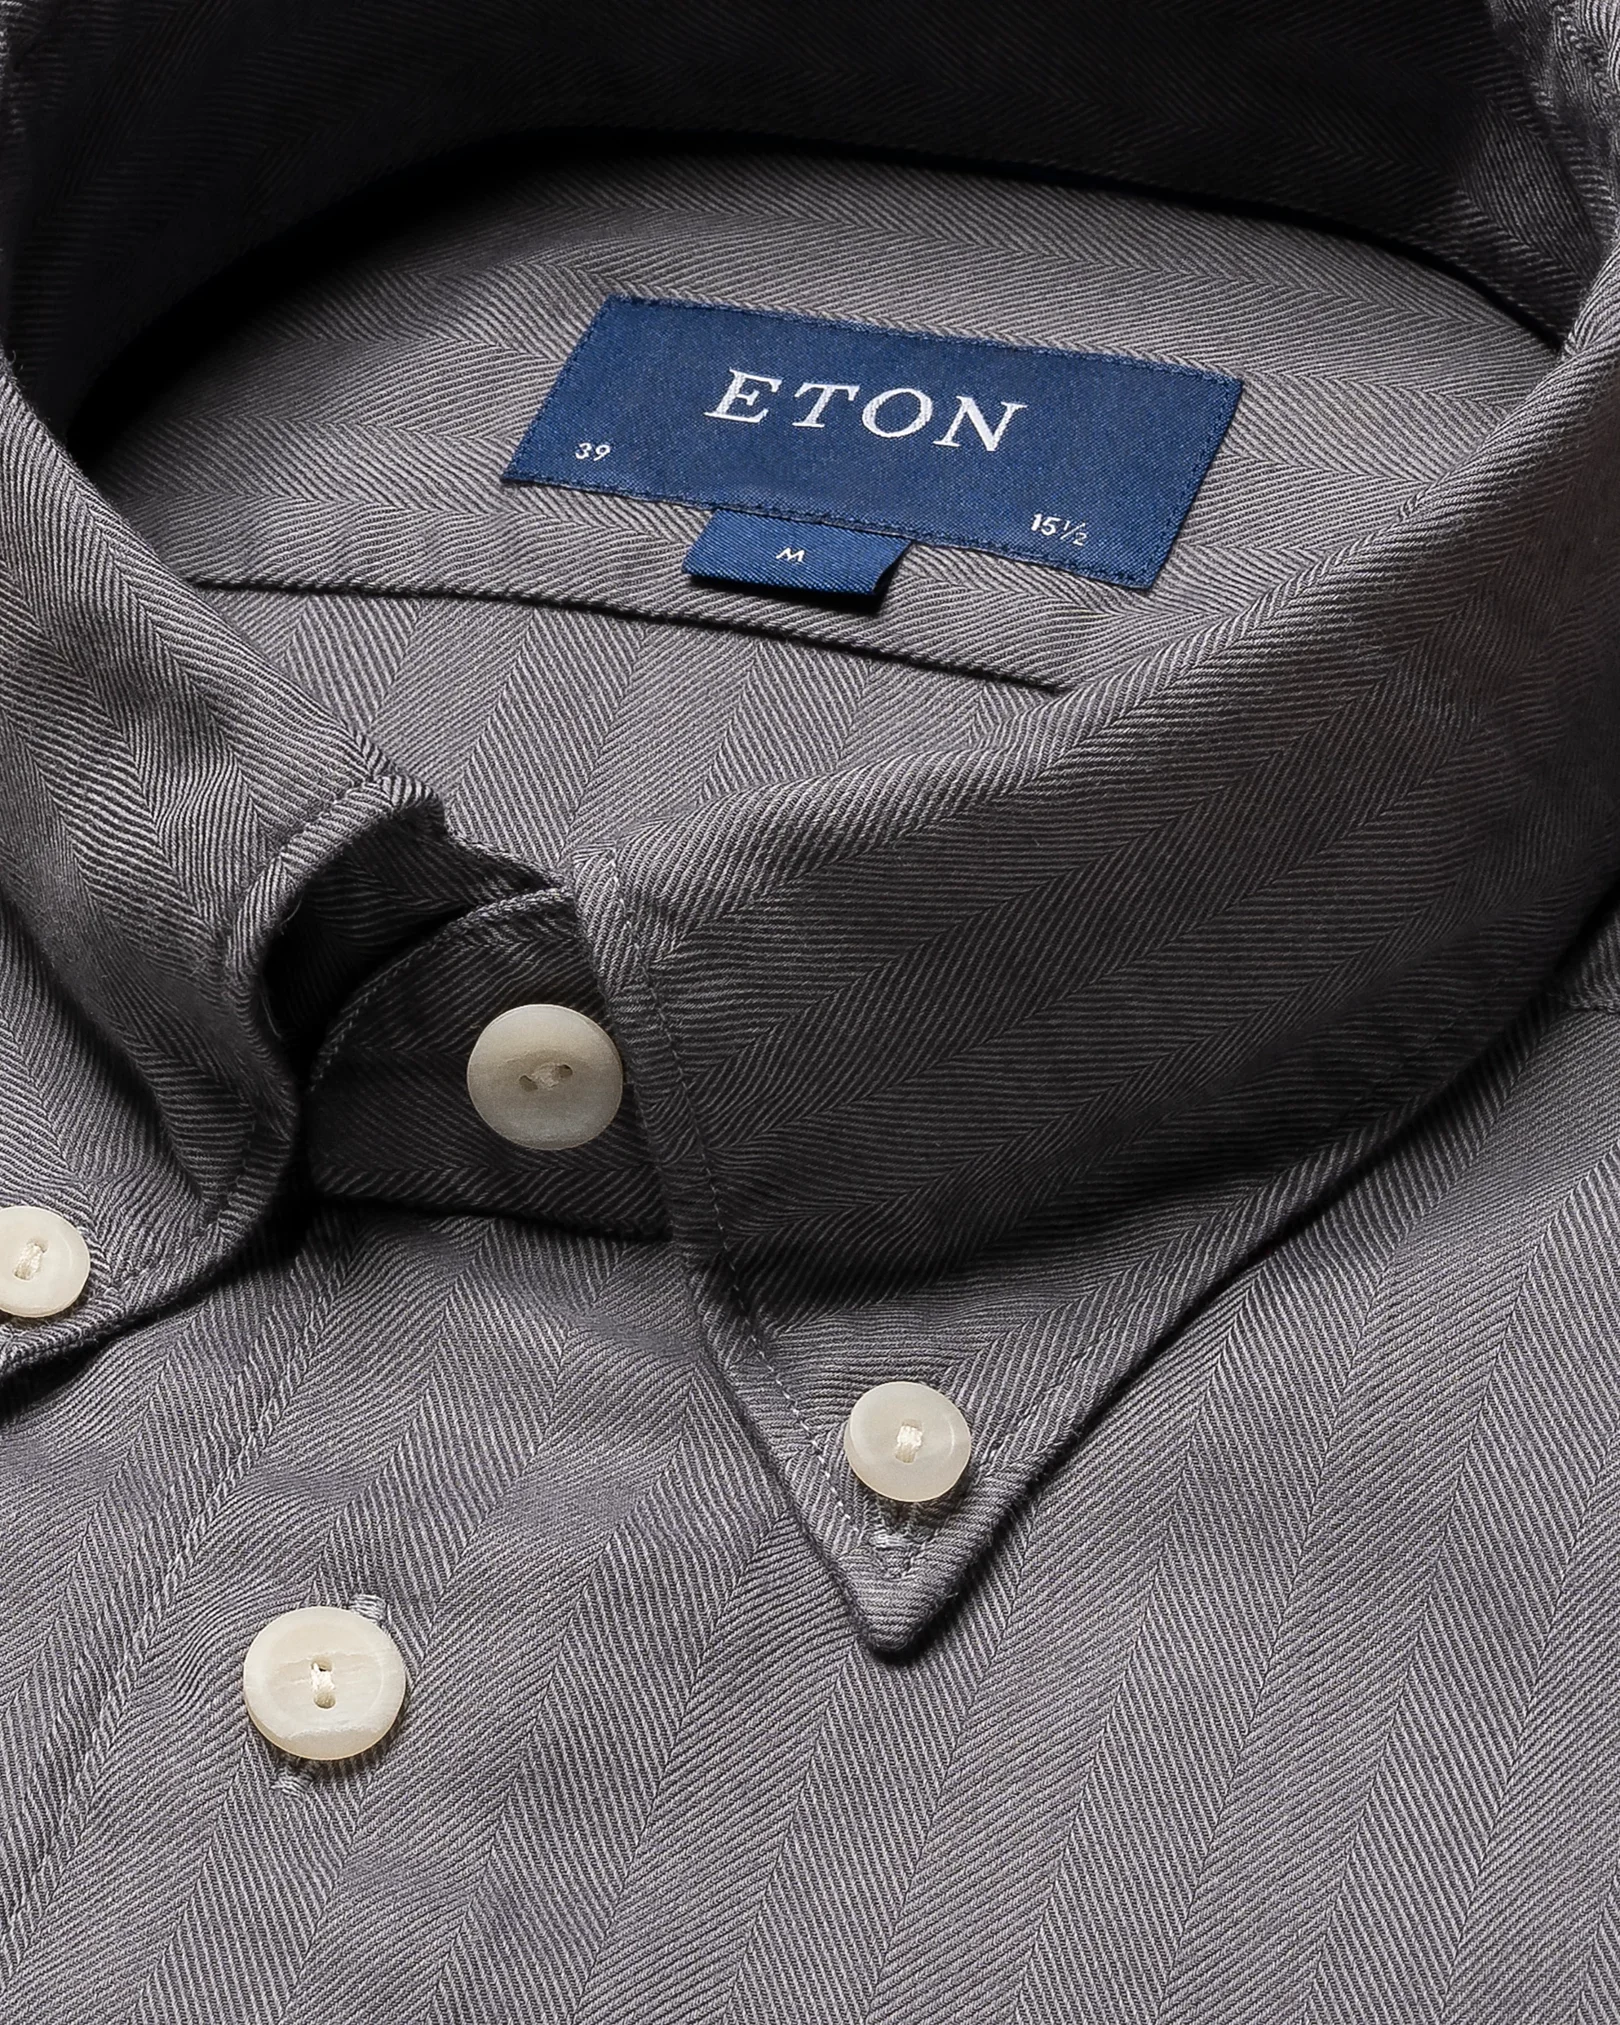 Eton - lightweight flannel